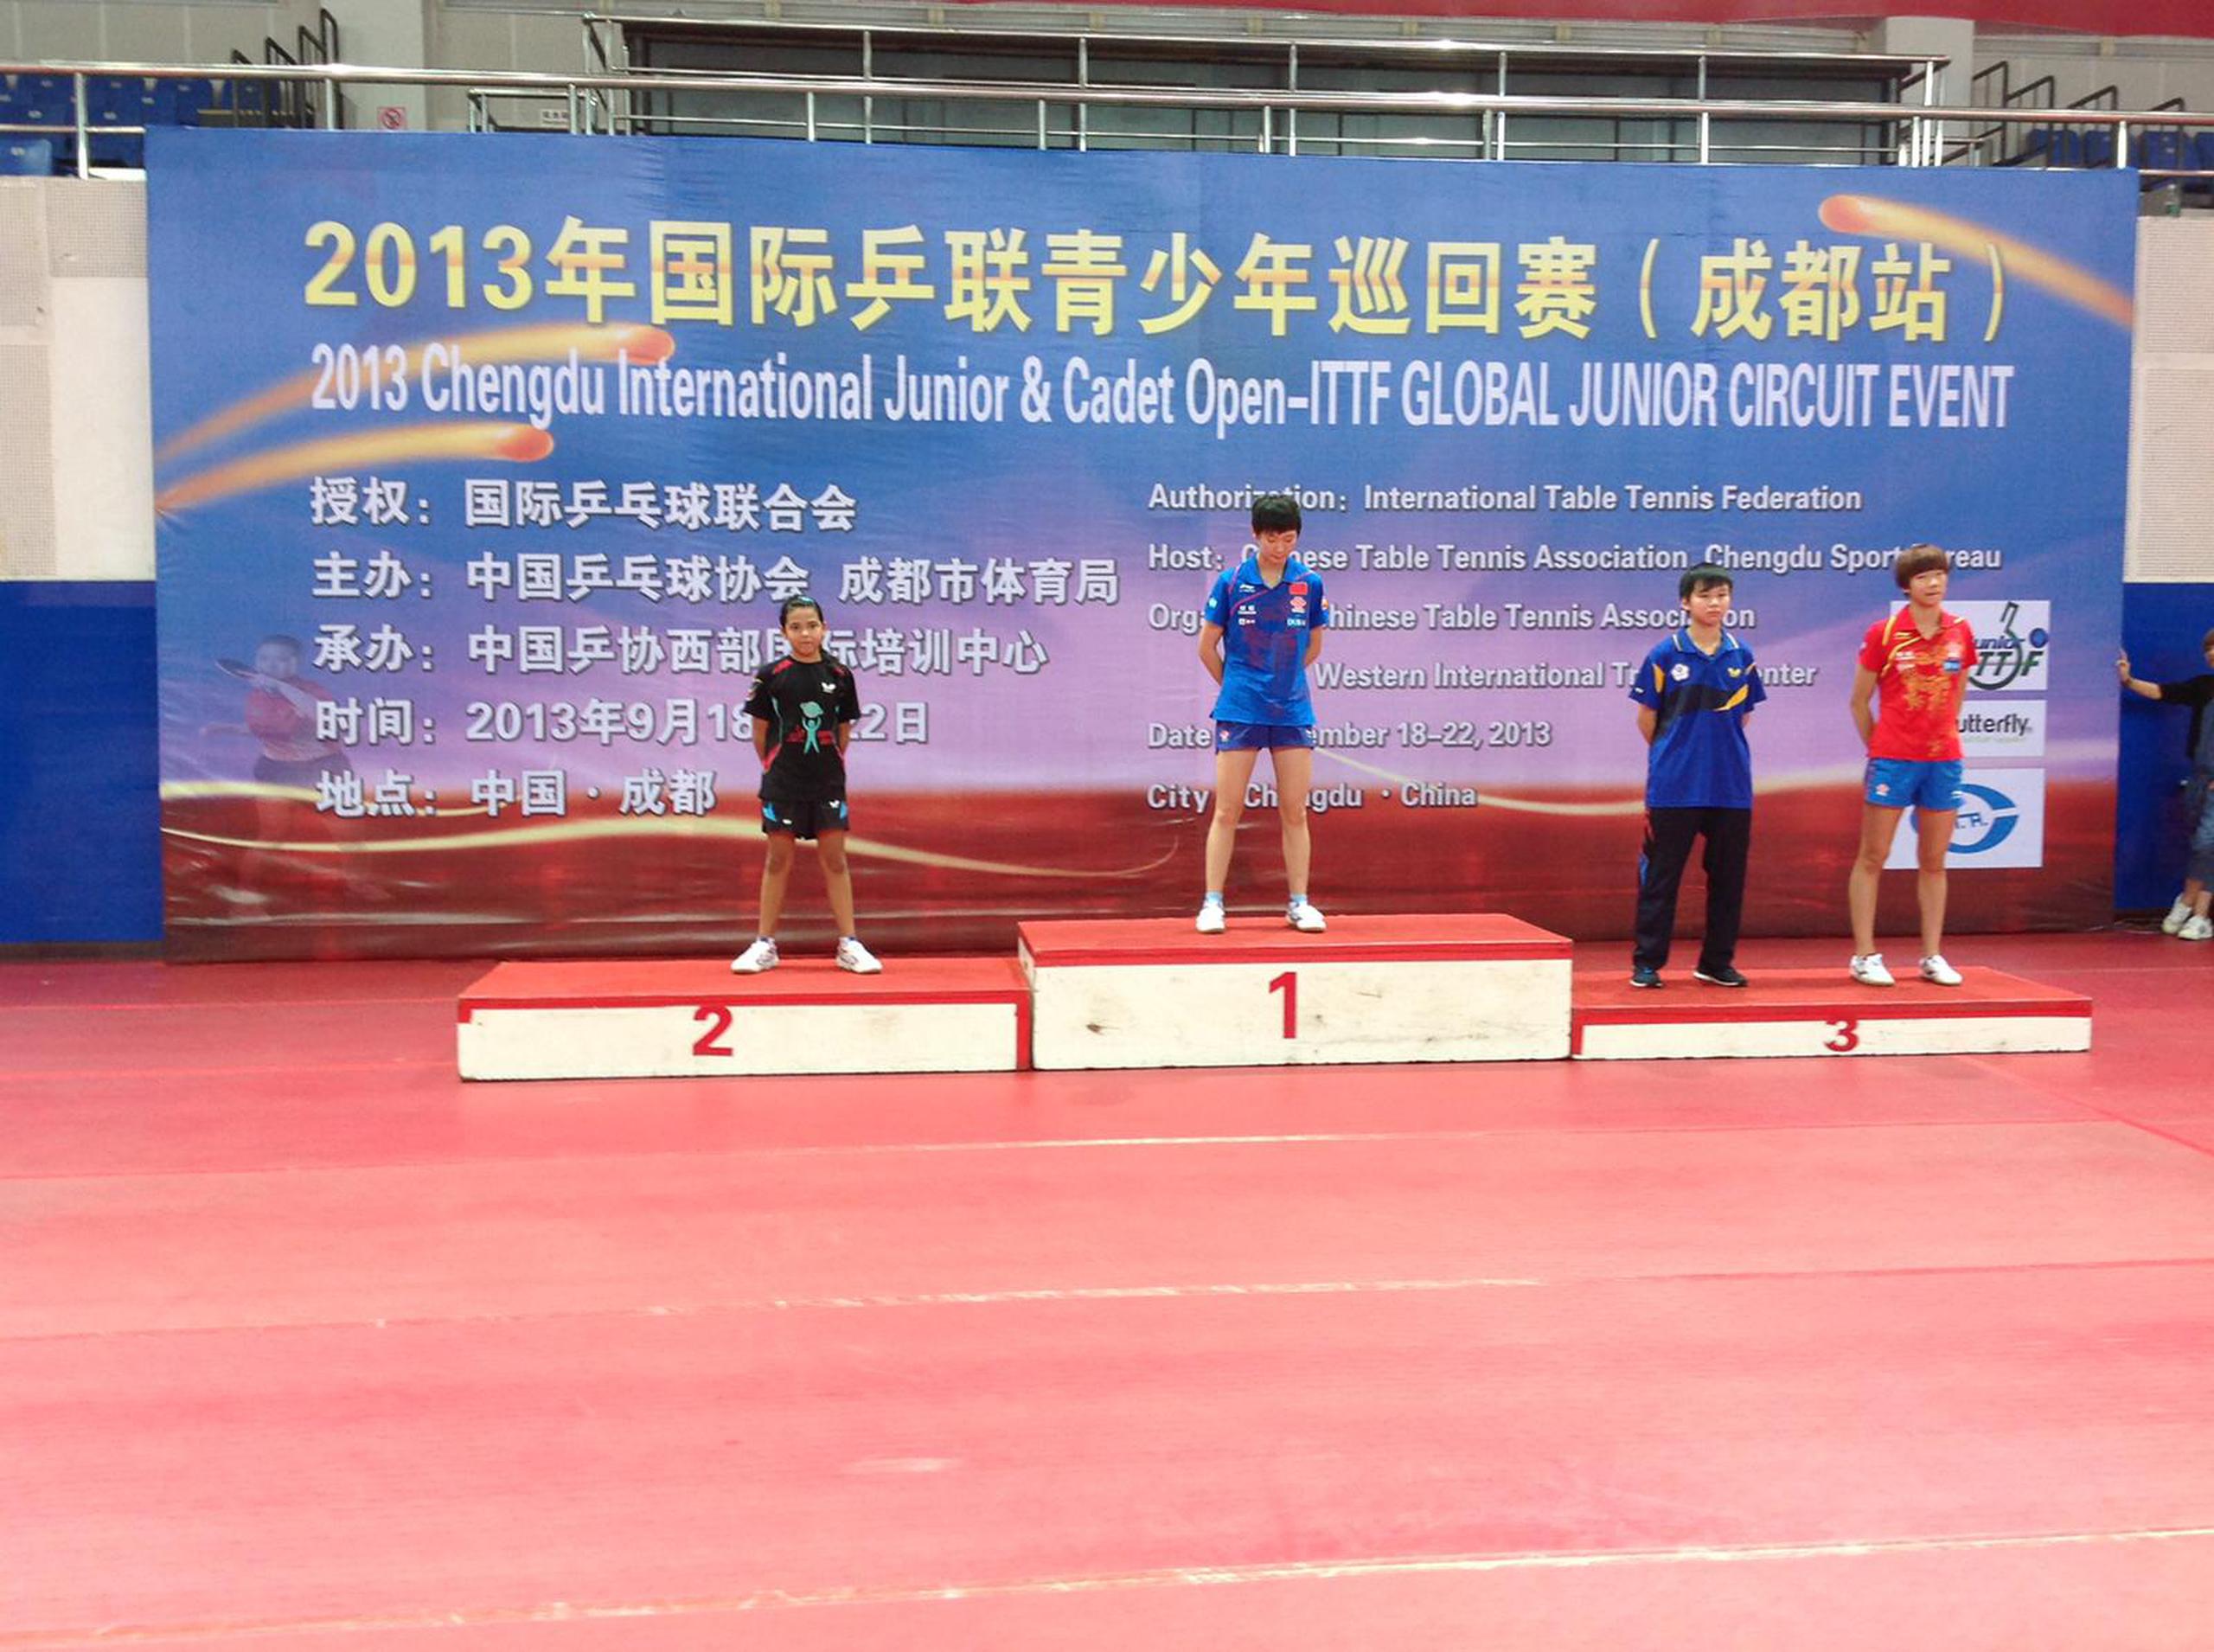 En esta foto del 2013, Adriana Díaz ocupa la plata en el podio y Manyu Wang el oro. Fue un evento de categoría Cadetes (hasta 15 años) en China. Díaz y Wang no se an enfrentado desde entonces.